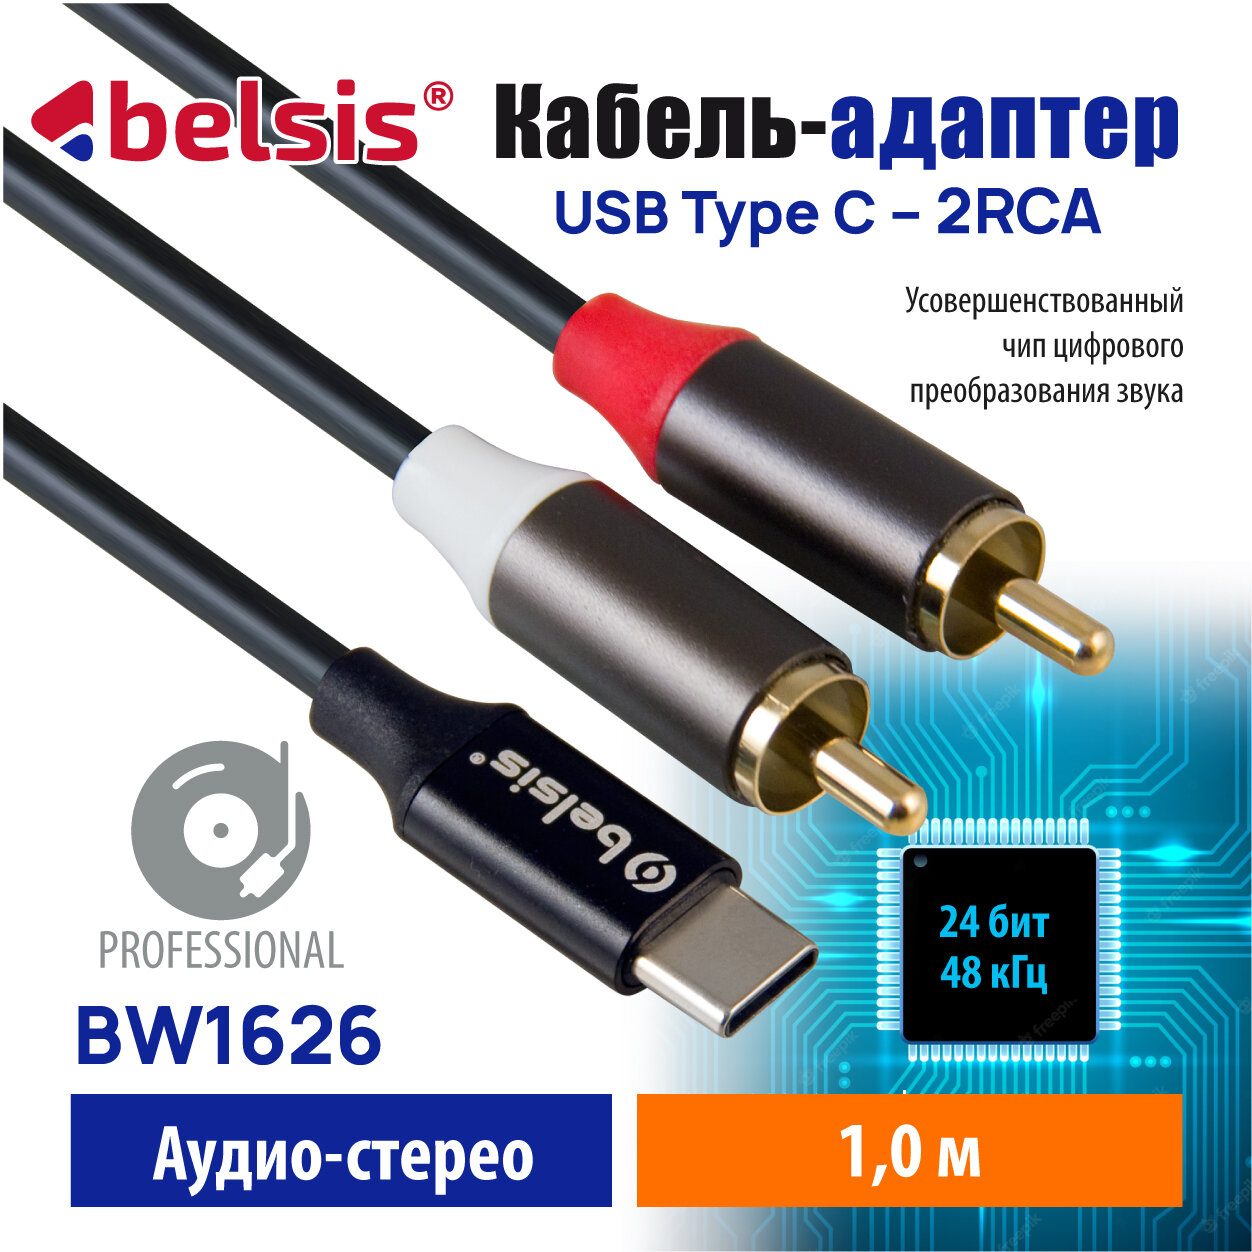 Кабель USB Type C 2RCA 24 бит /48 кГц. Аудио Стерео длина 1м, Belsis, совместим с саундбоксом, AV ресивером, Микшером, Car Audio и др/BW1626